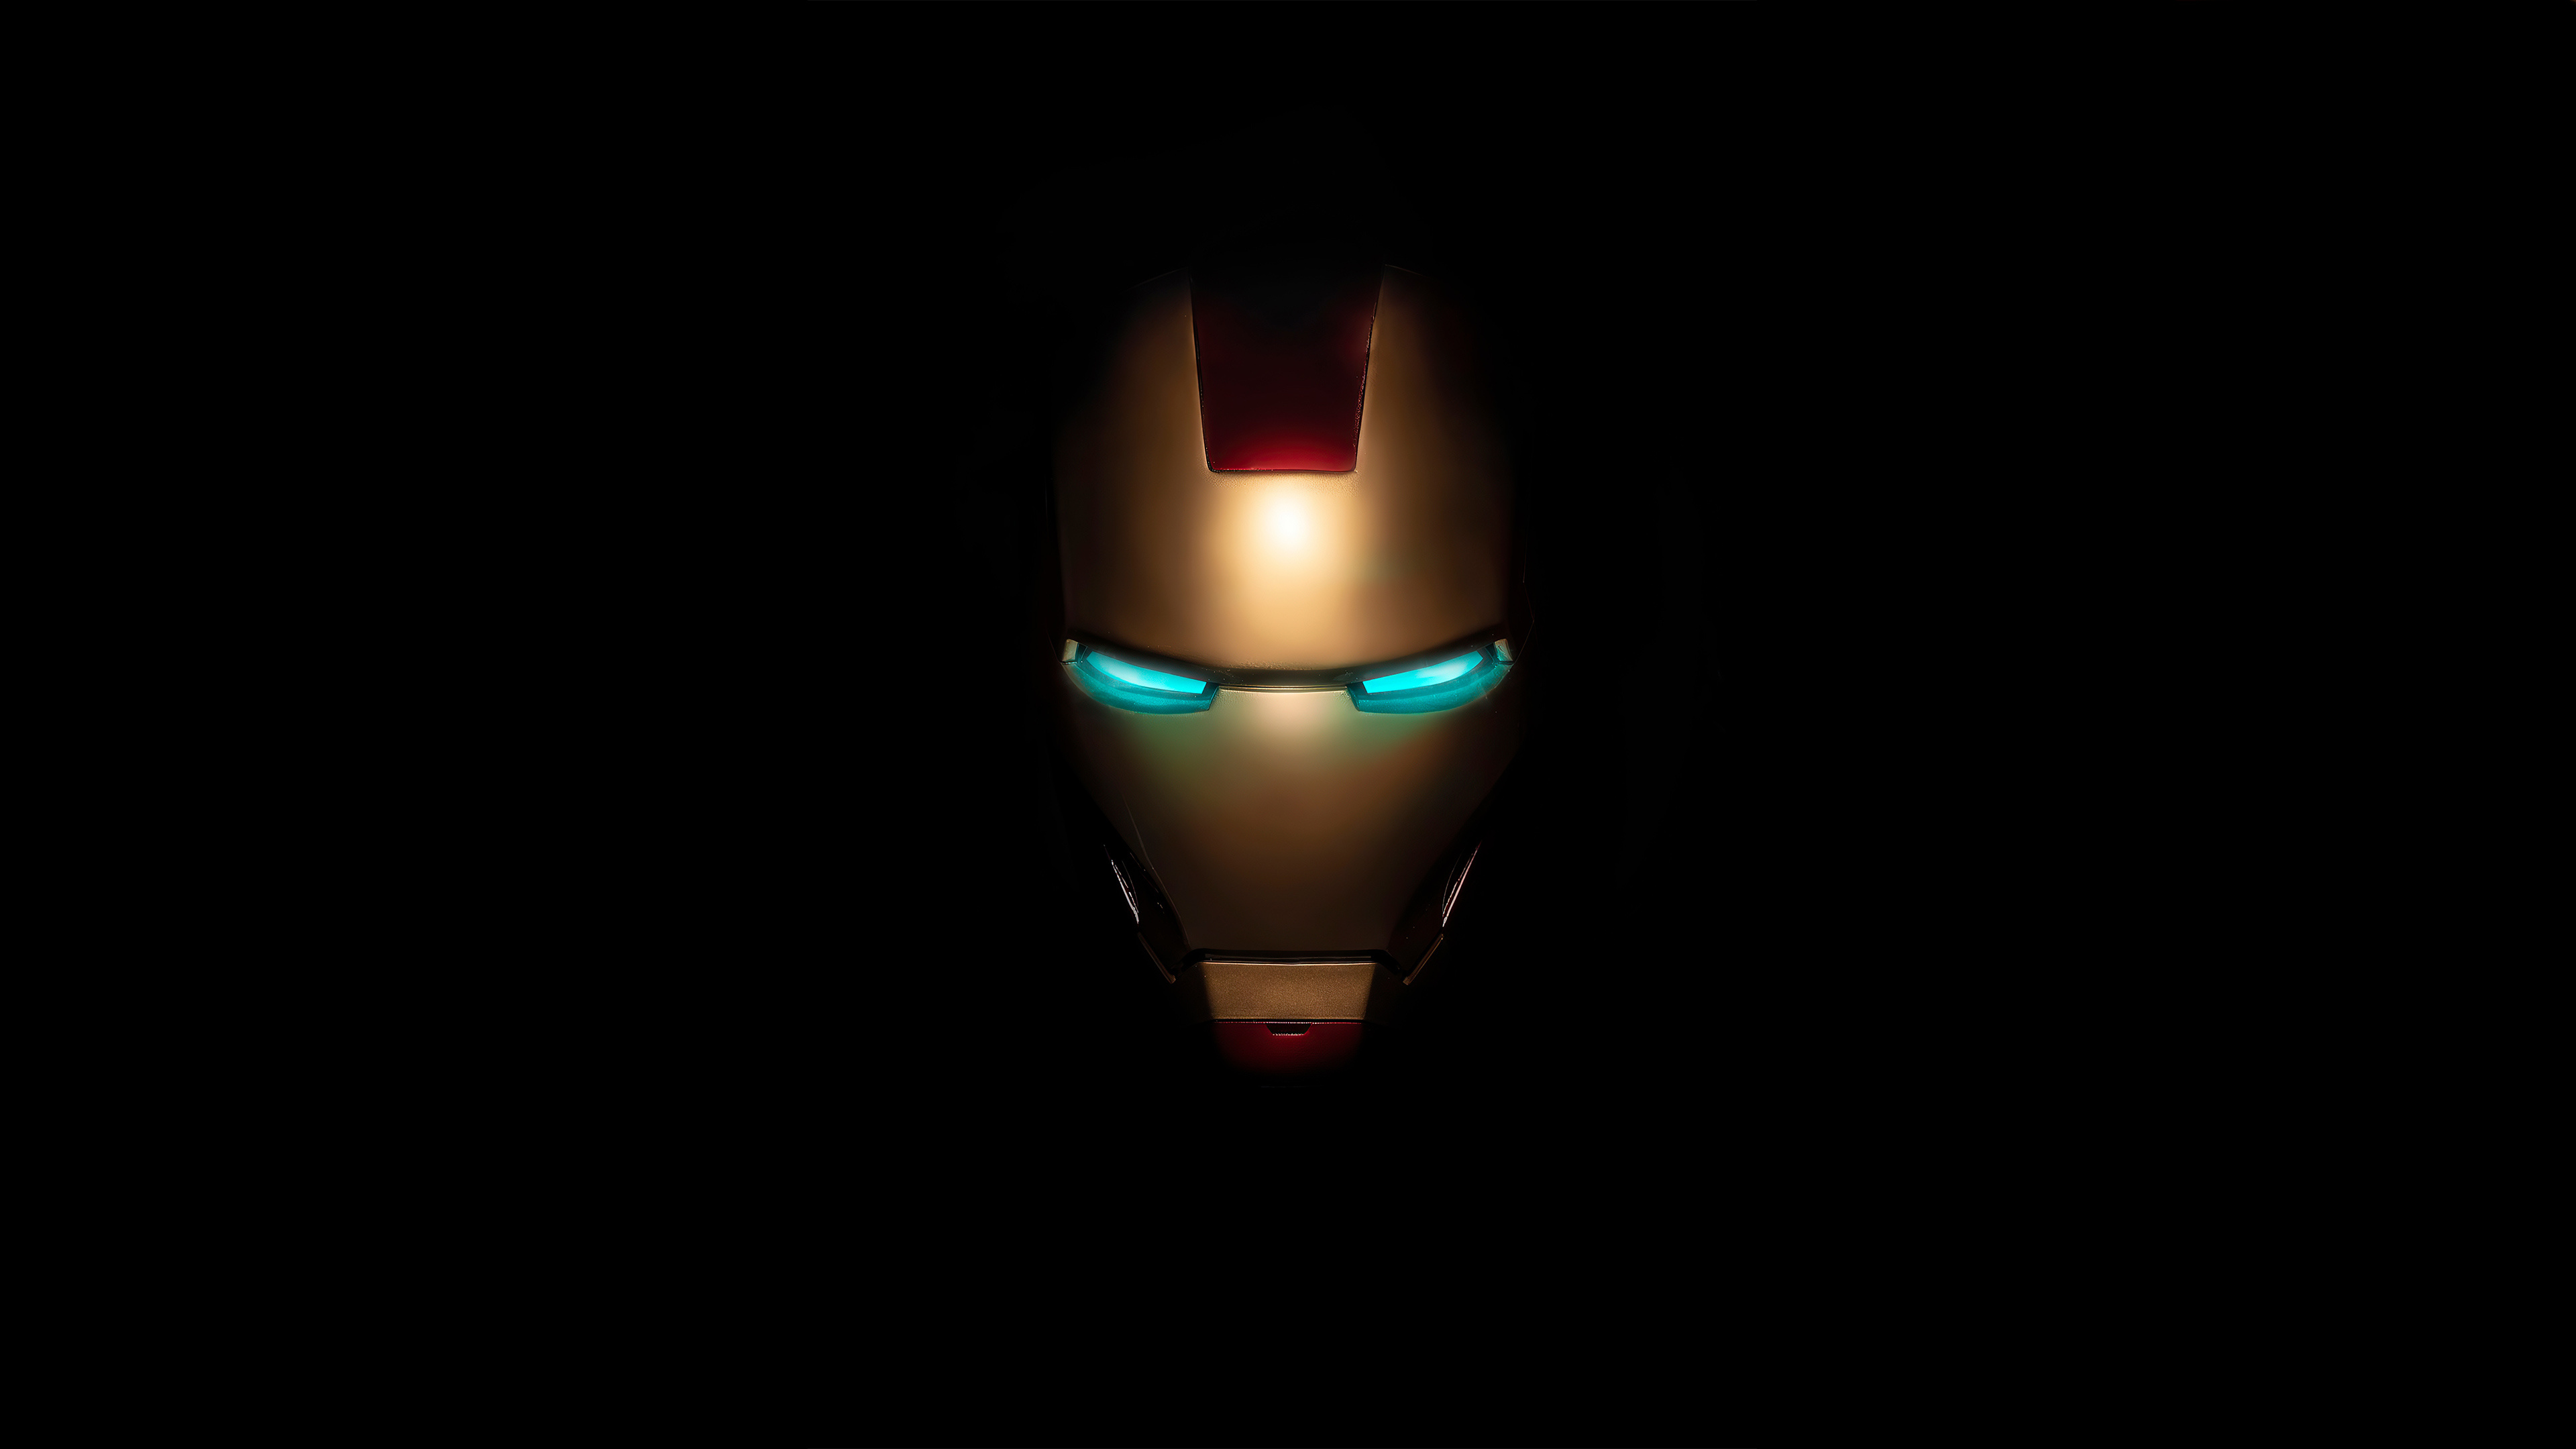 Iron Man Logo, Iron Man Mask, 4K Resolution, Superhero Symbol, 3840x2160 4K Desktop